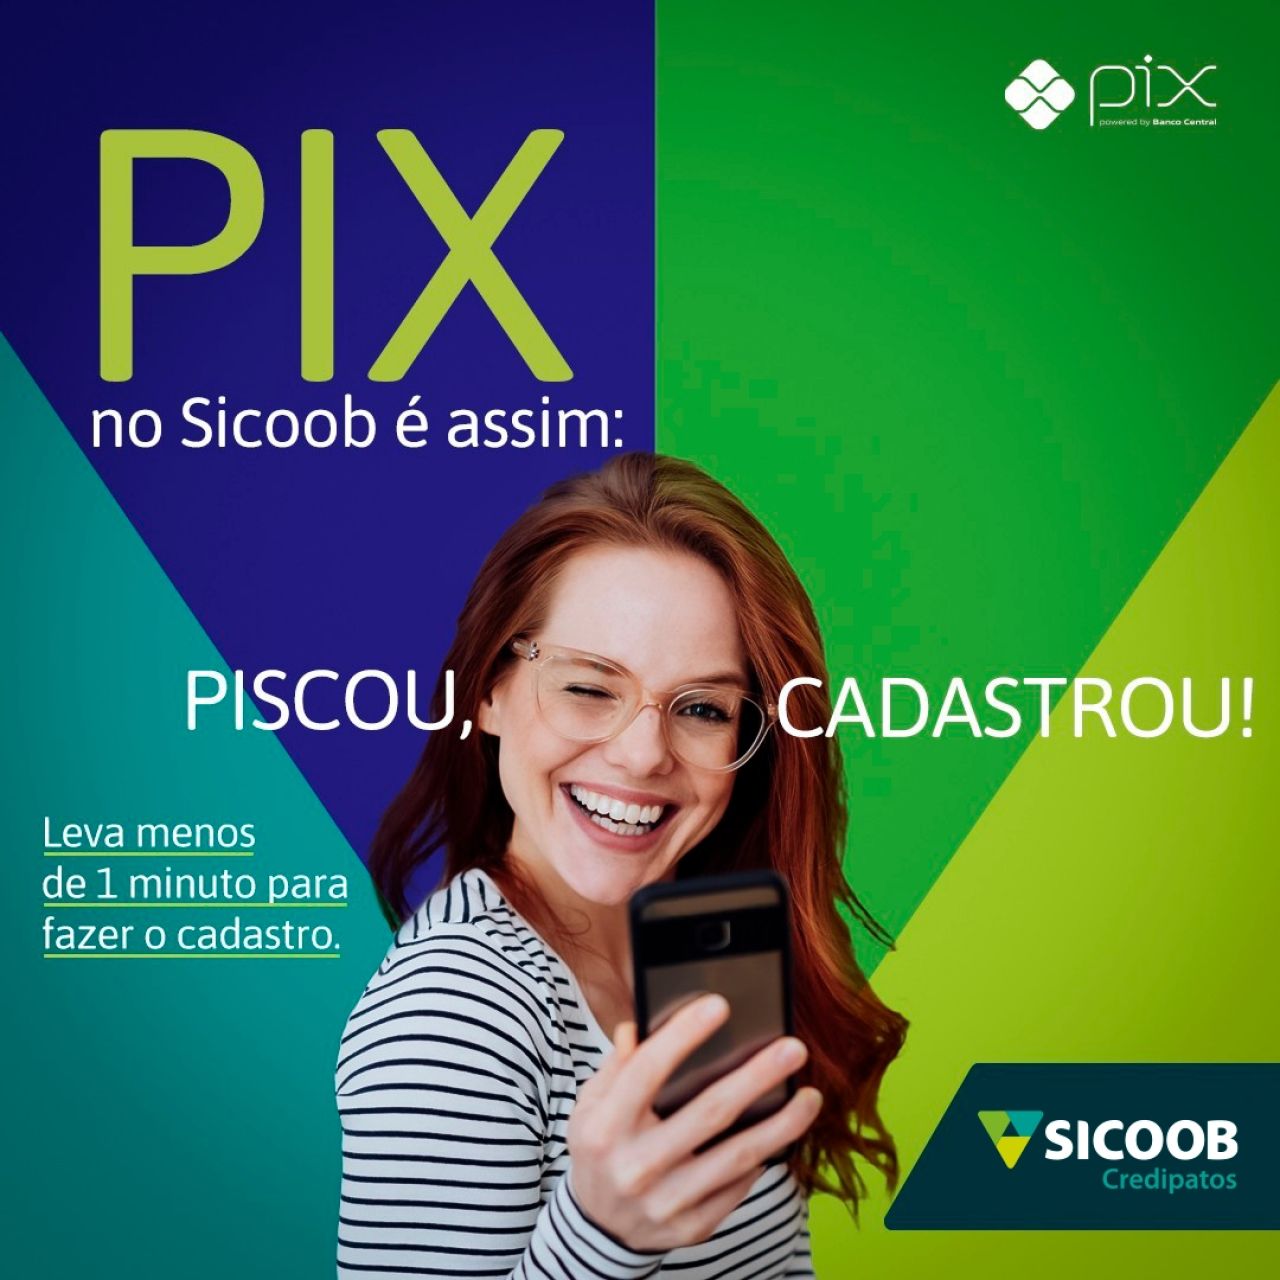 Sicoob anuncia integração com a plataforma Pix